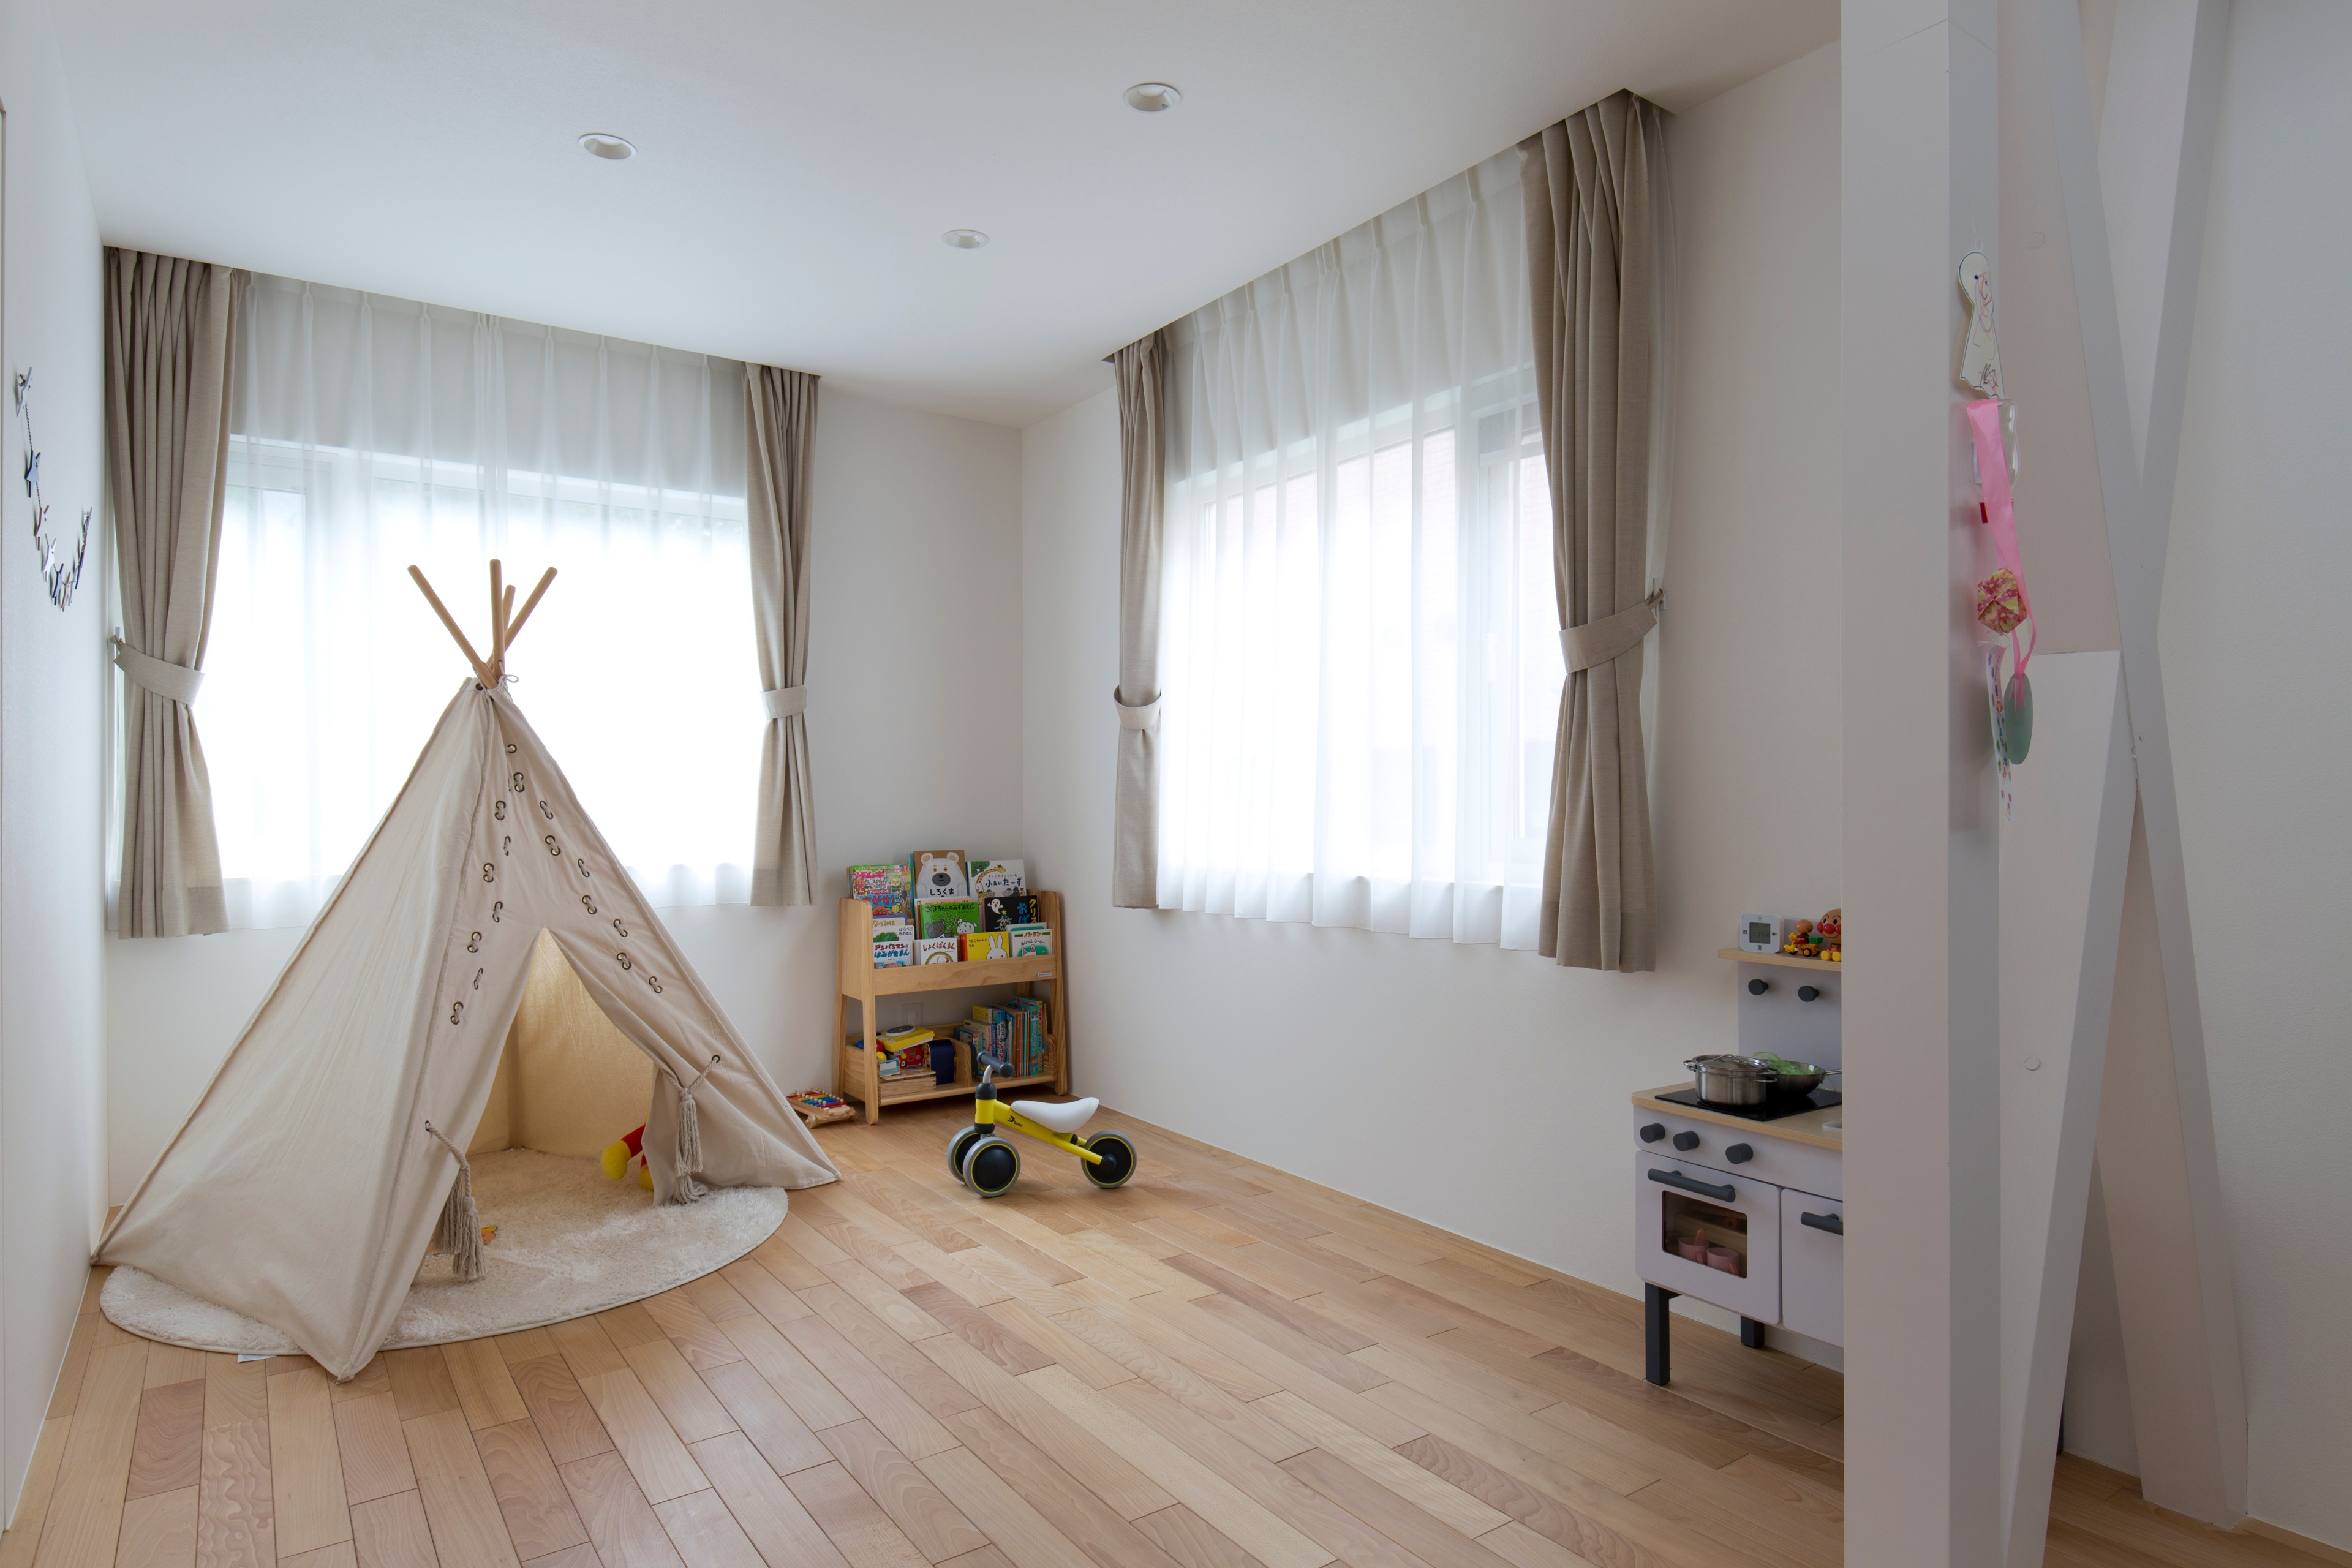 北欧スタイルのおしゃれな子供部屋のインテリア画像 21年10月 Houzz ハウズ